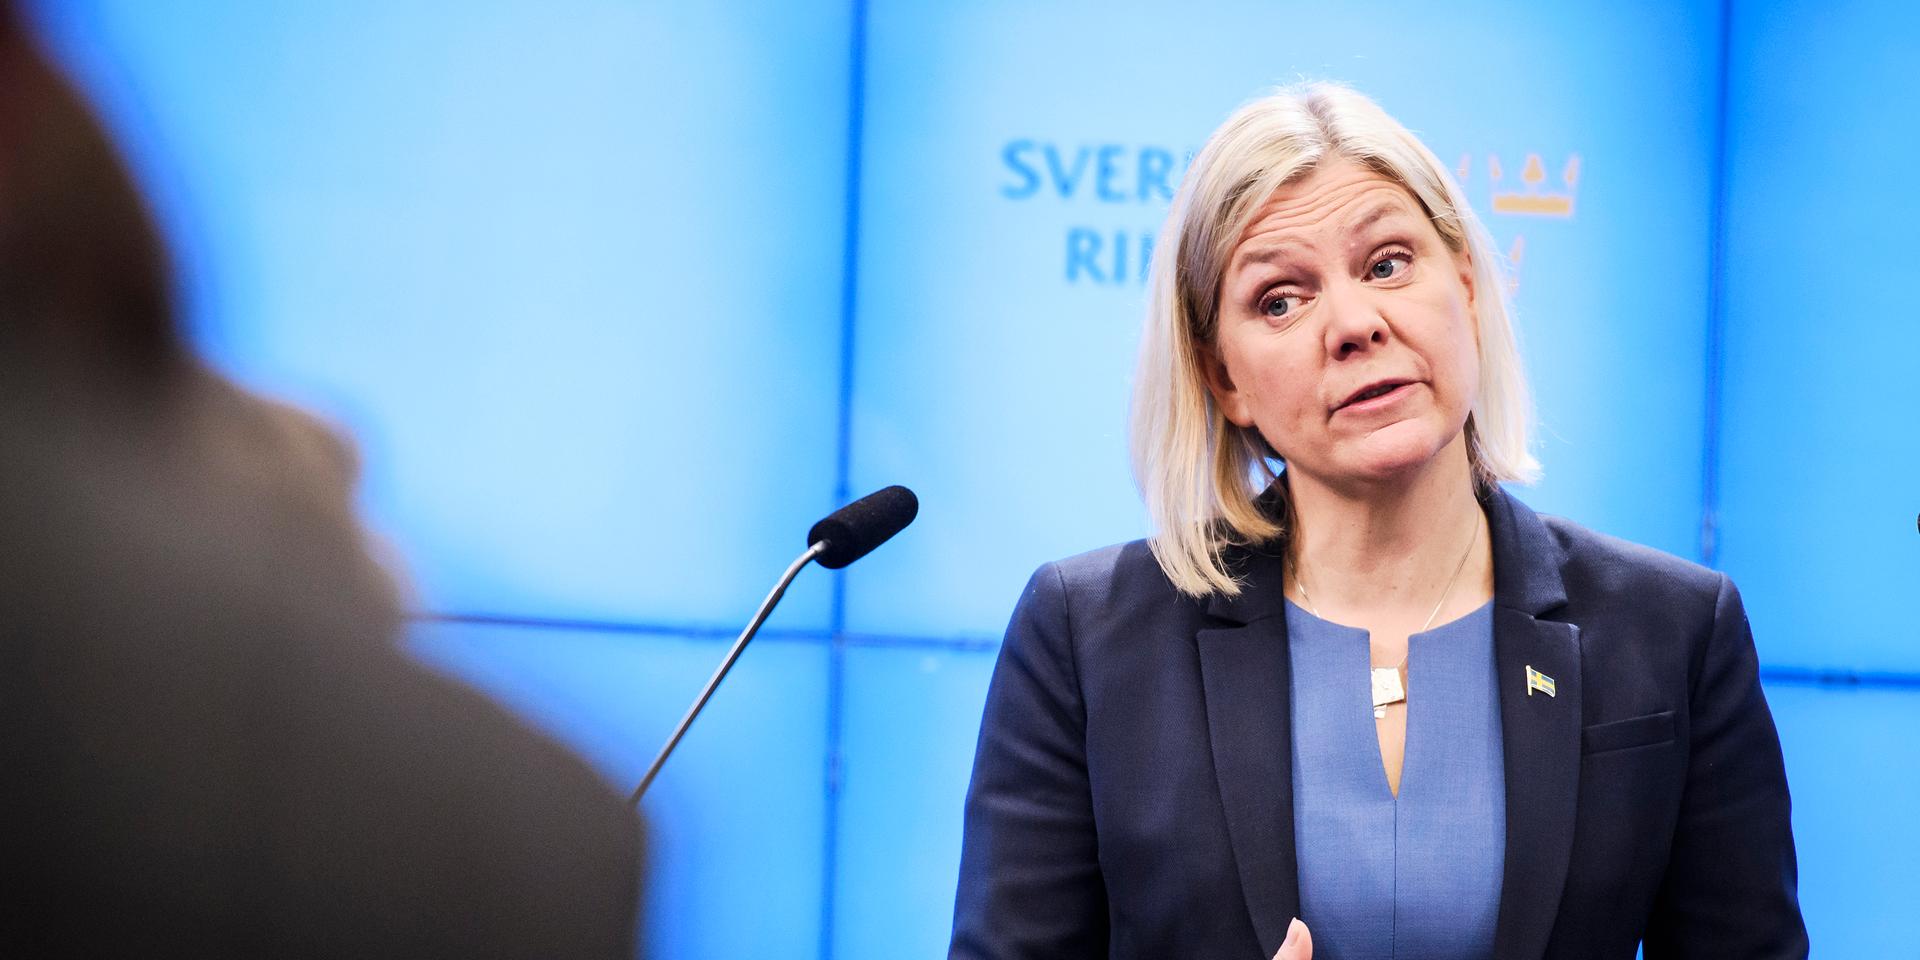 Statsminister Magdalena Andersson (S) efter onsdagens statsministeromröstning i riksdagen.